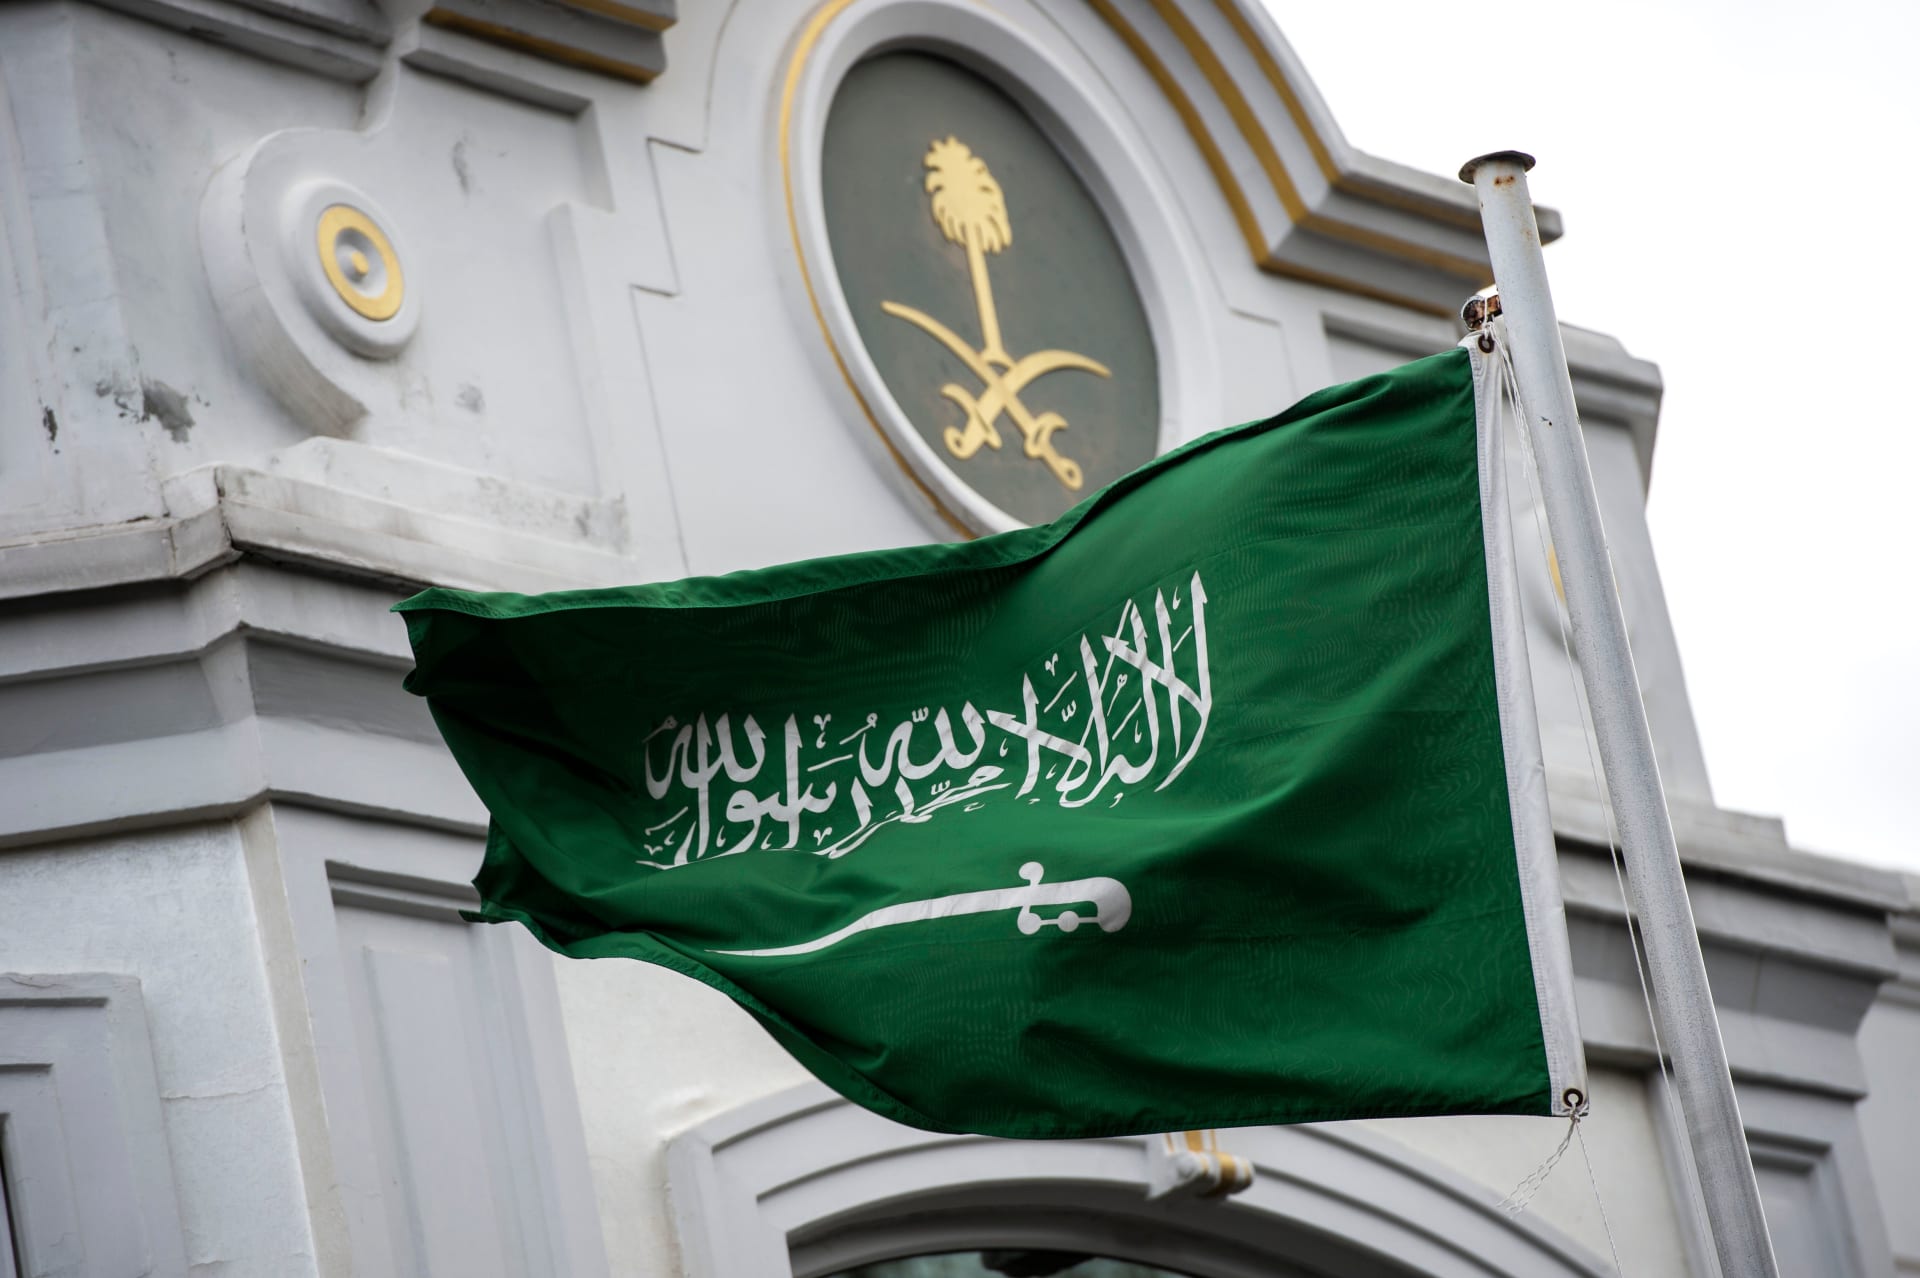 المملكة العربية السعودية تعلن استعدادها للتطبيع مع إسرائيل بمجرد تنفيذ شرط واحد